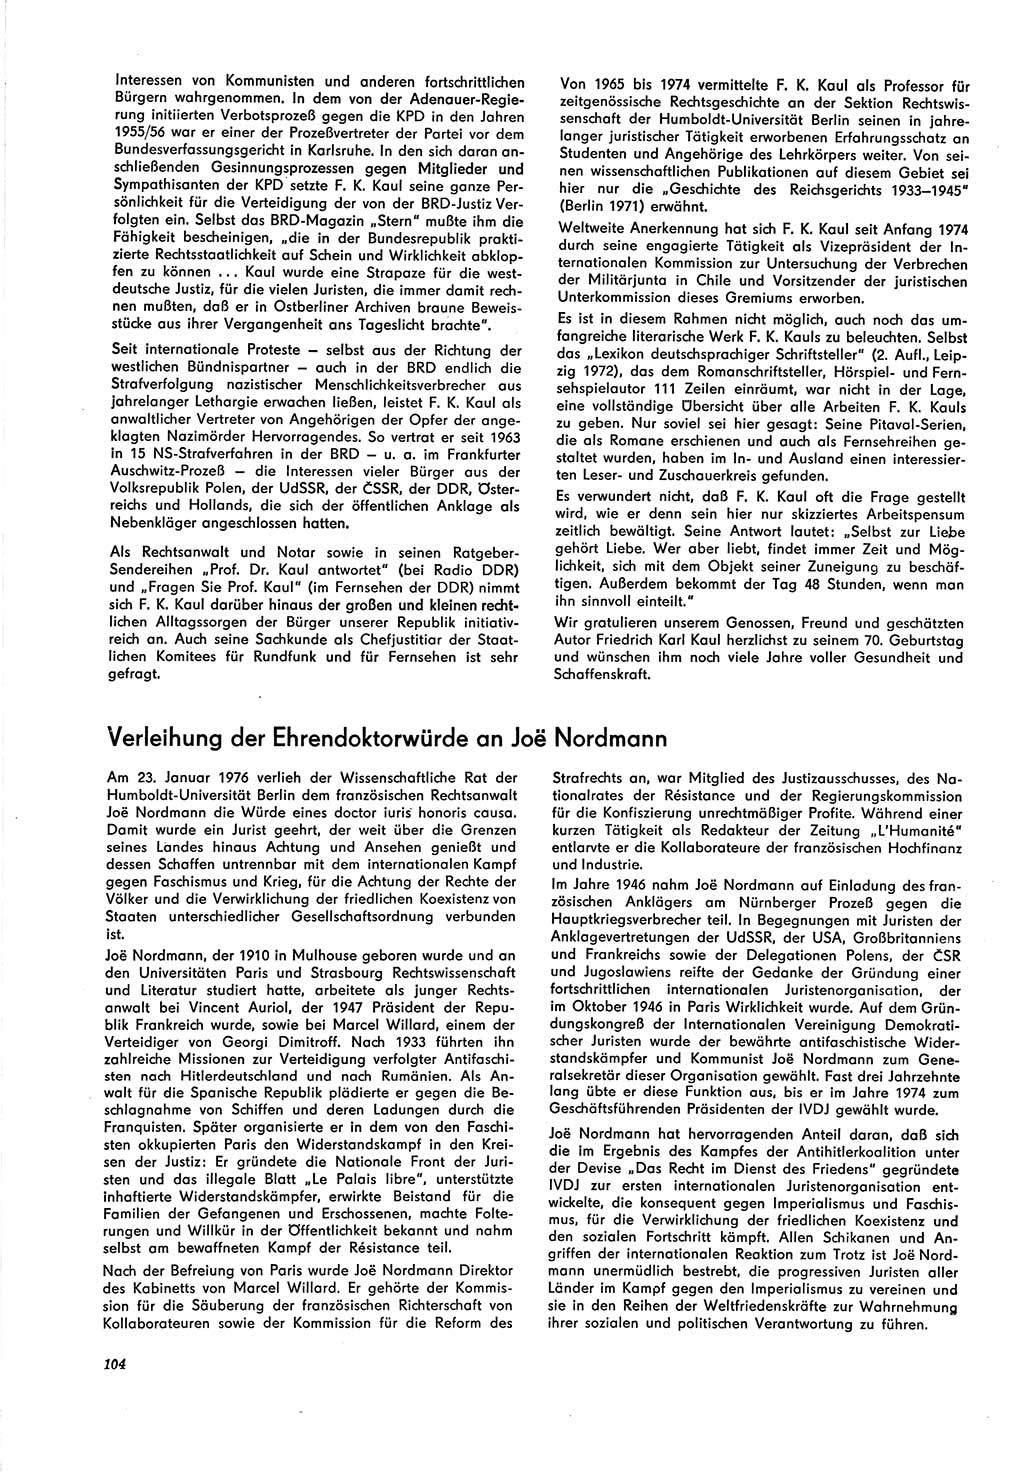 Neue Justiz (NJ), Zeitschrift für Recht und Rechtswissenschaft [Deutsche Demokratische Republik (DDR)], 30. Jahrgang 1976, Seite 104 (NJ DDR 1976, S. 104)